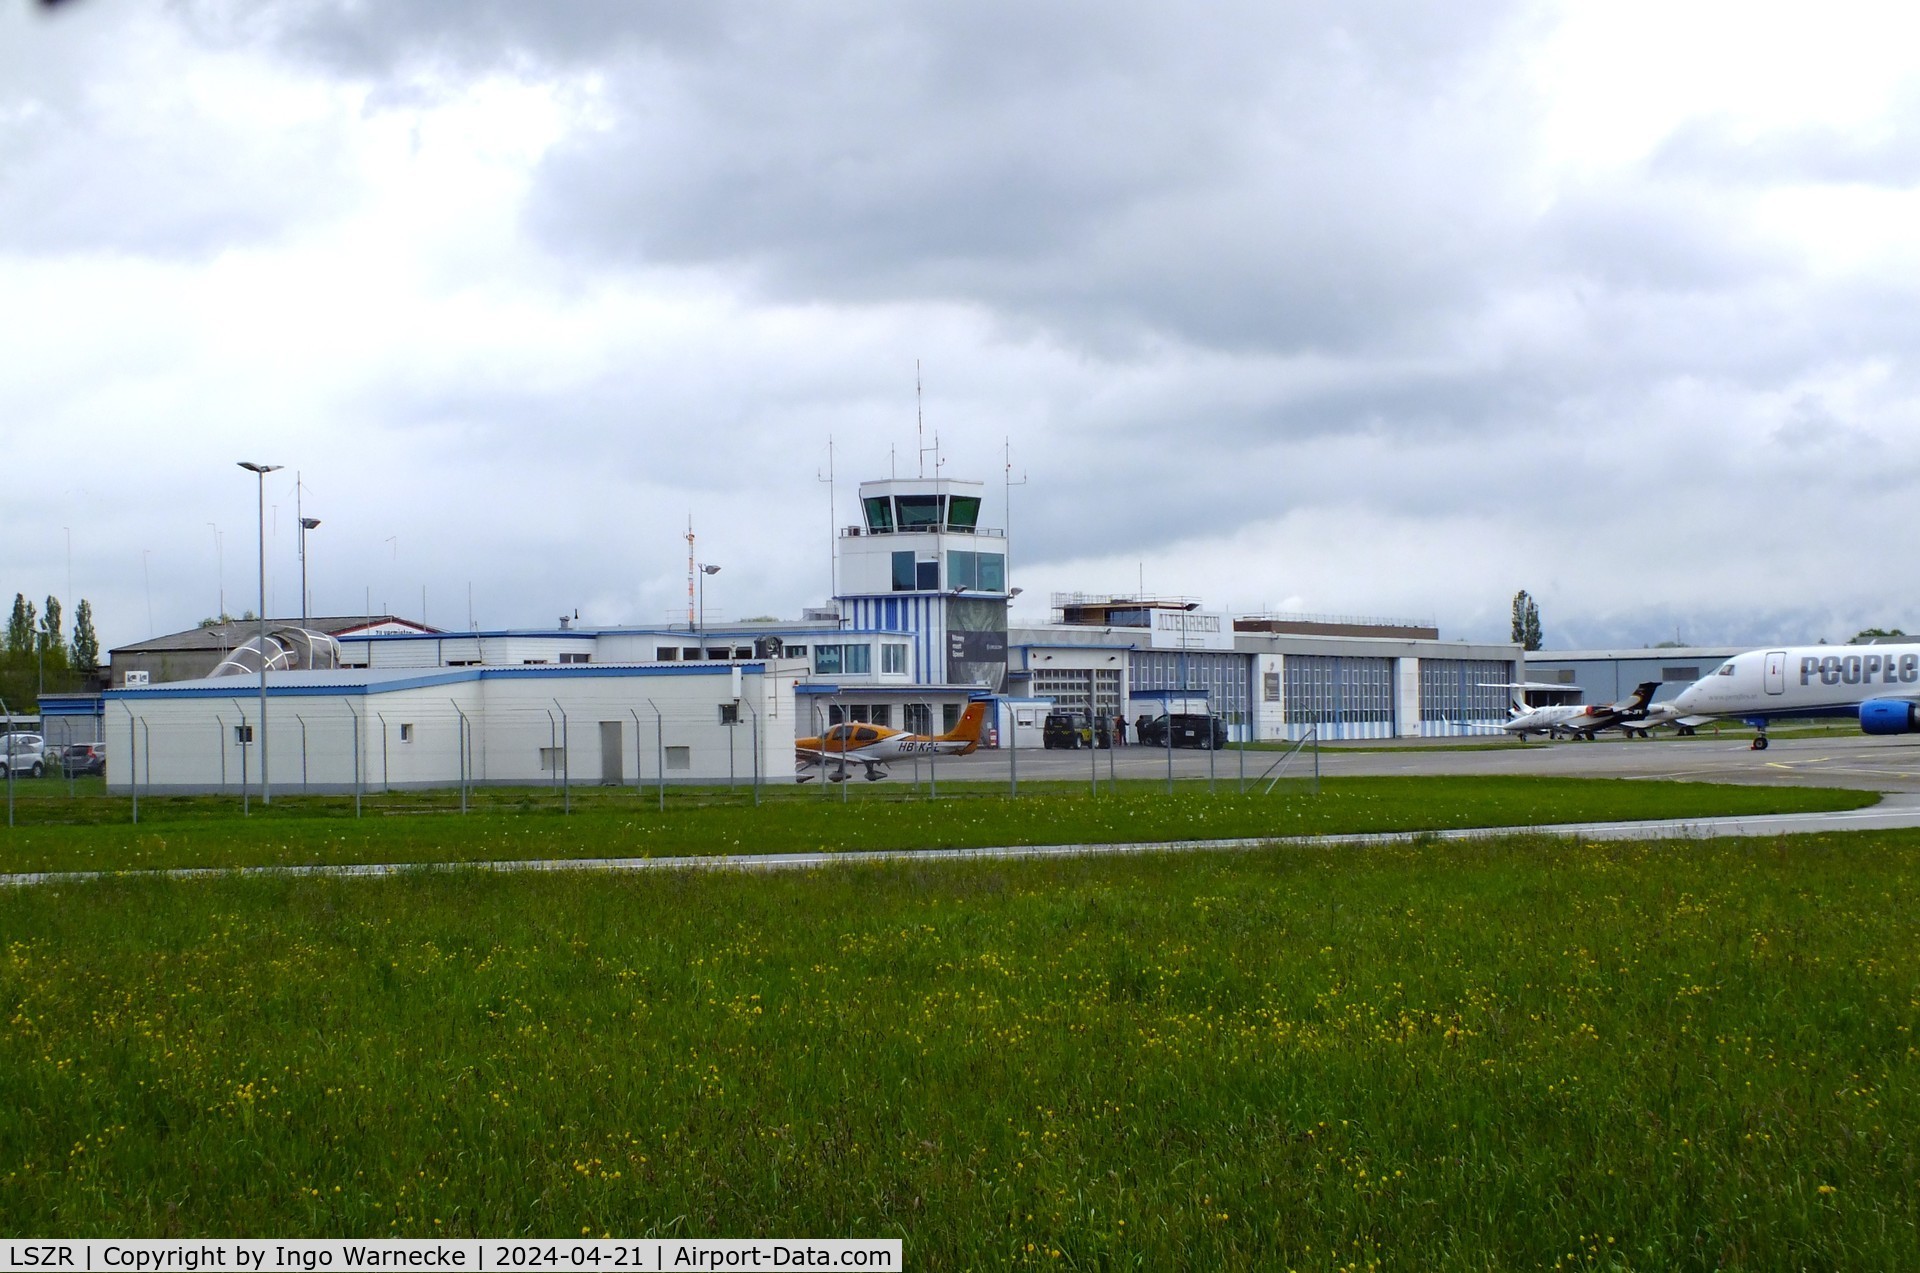 St. Gallen-Altenrhein Airport, Altenrhein Switzerland (LSZR) - airside view of terminal and tower at St.Gallen-Altenrhein airport